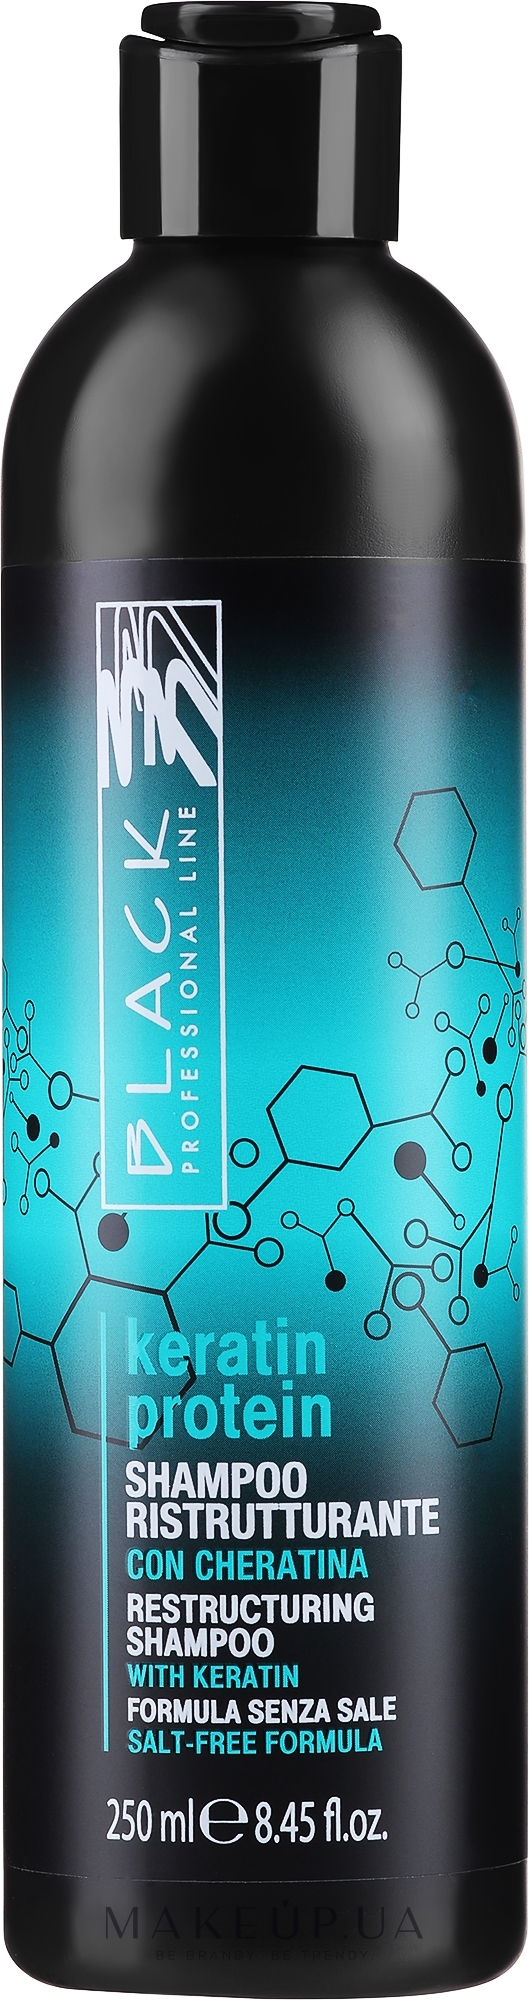 Реструктурирующий шампунь для поврежденных волос "Кератиновый протеин" - Black Professional Line Keratin Protein Shampoo — фото 250ml